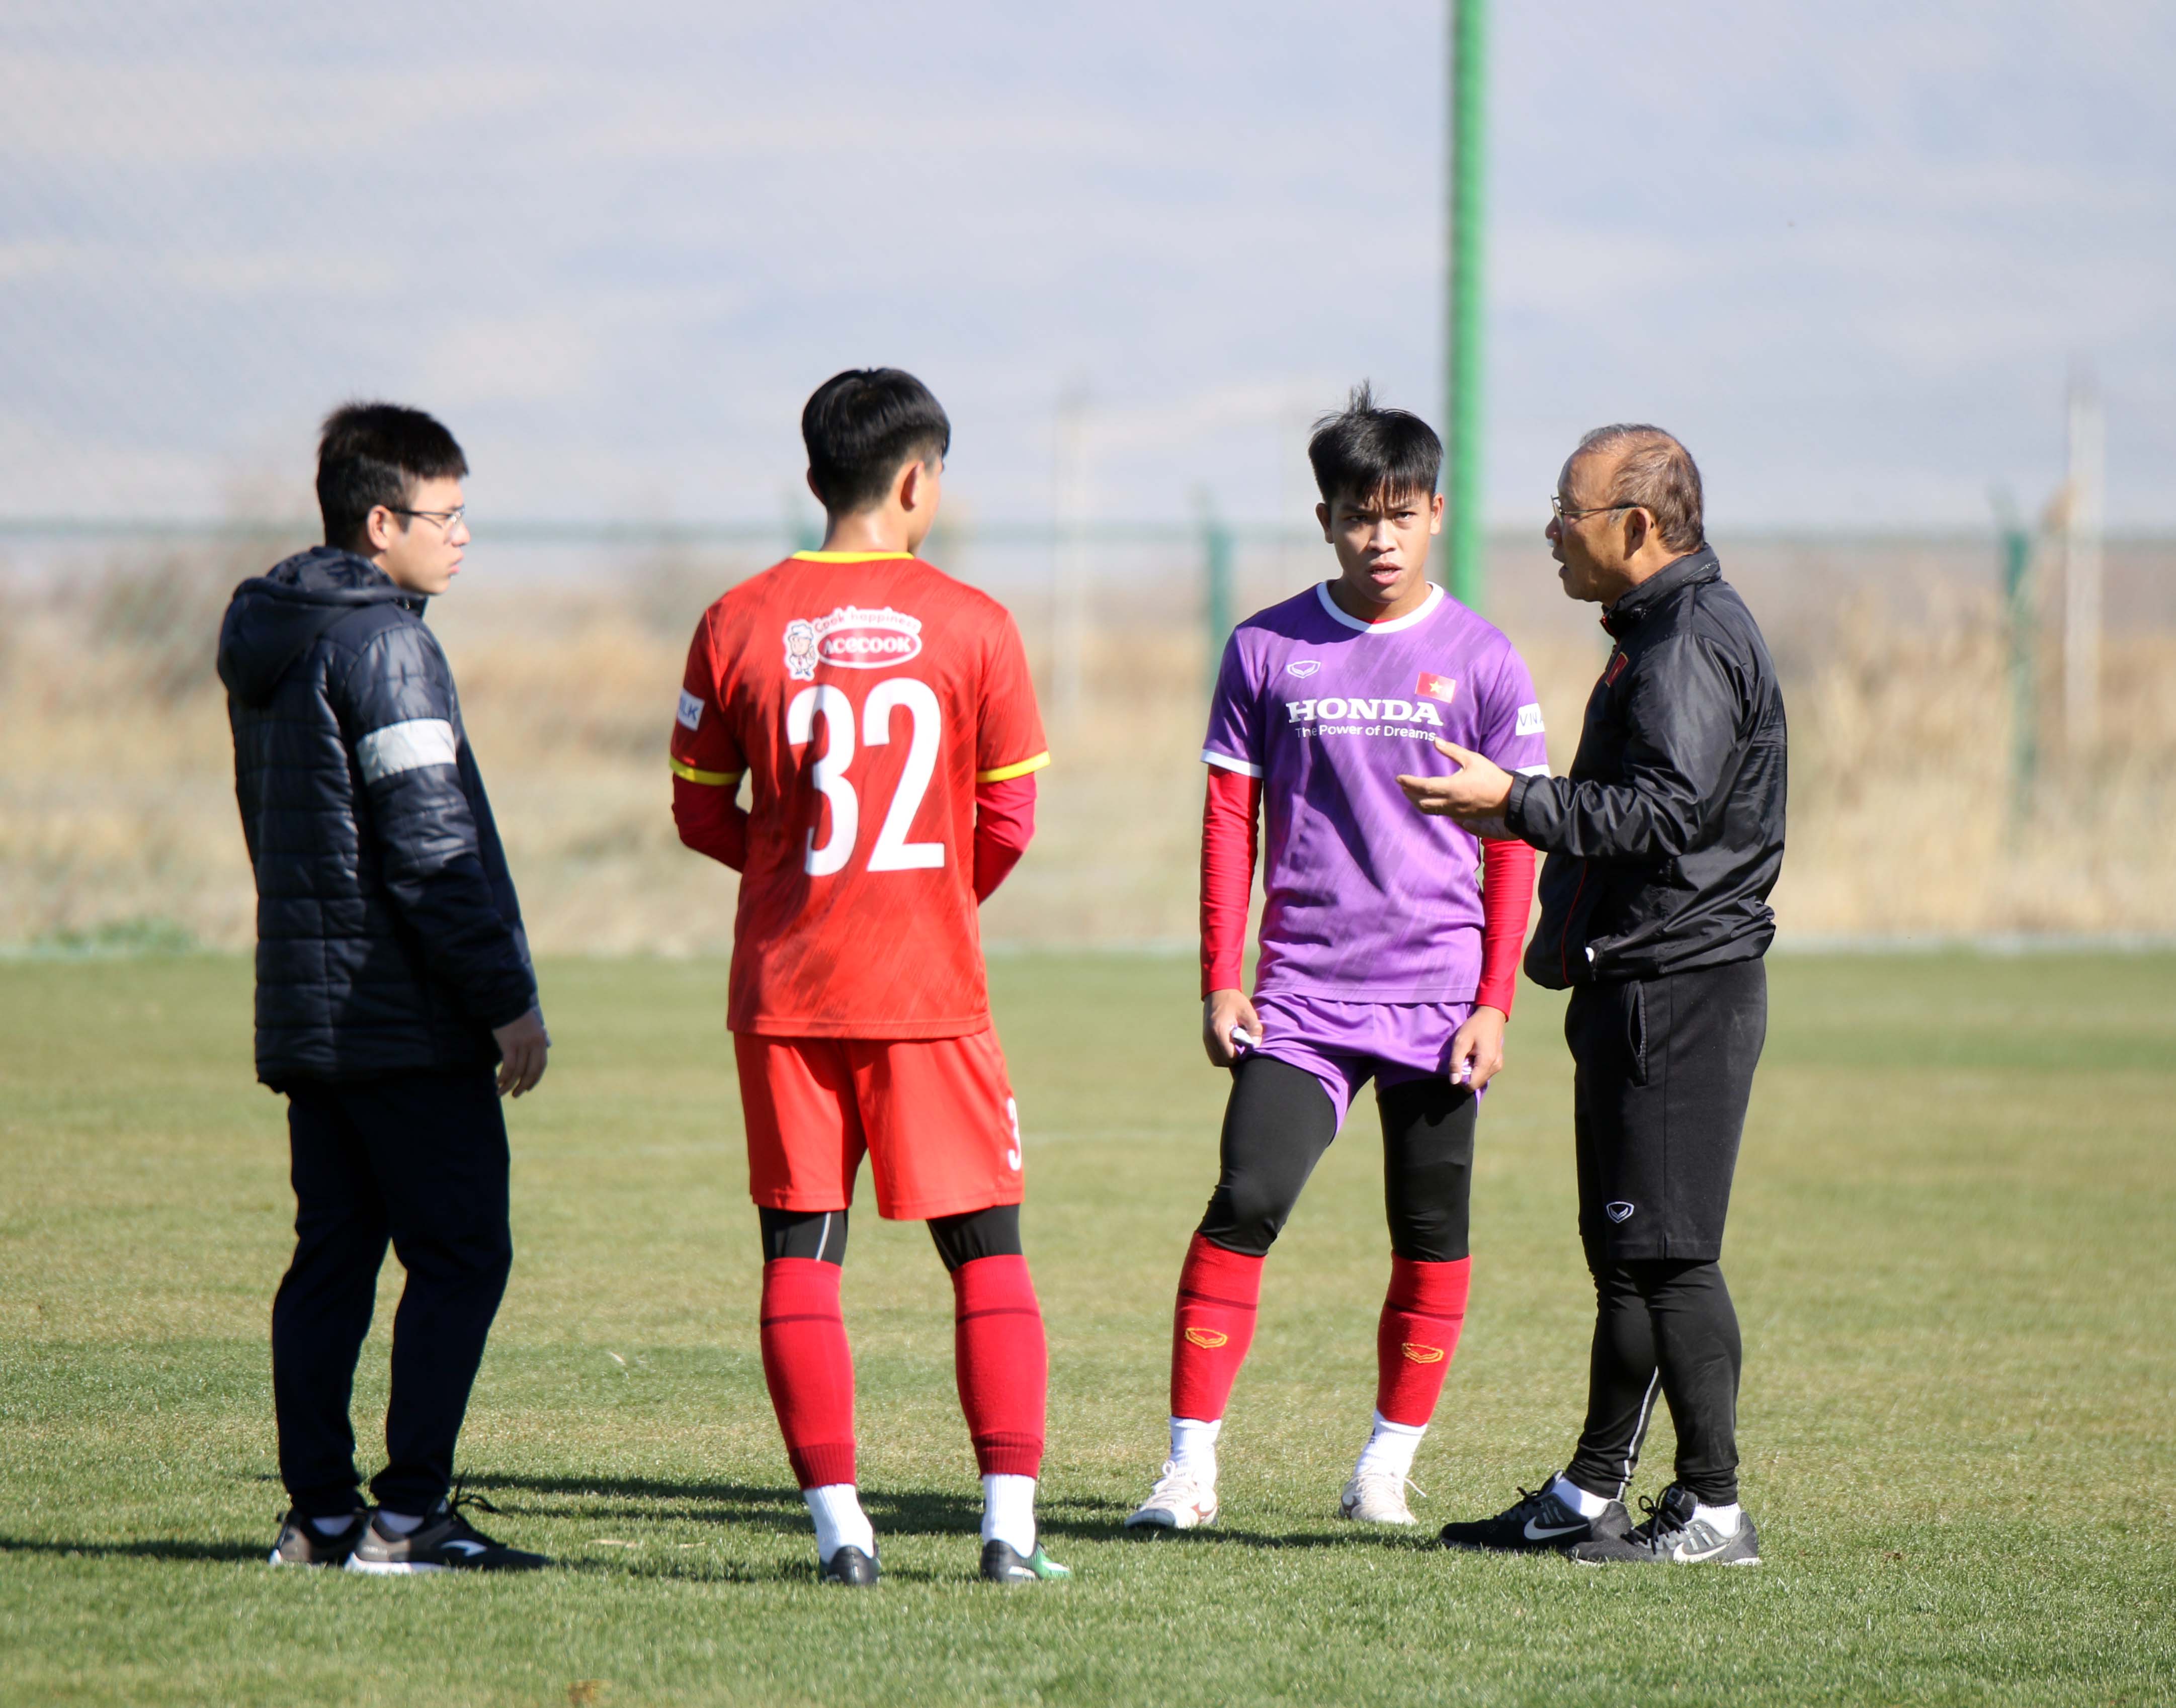 U23 Việt Nam thi đấu tìm đội hình chính: ông Park khá hài lòng - Ảnh 1.